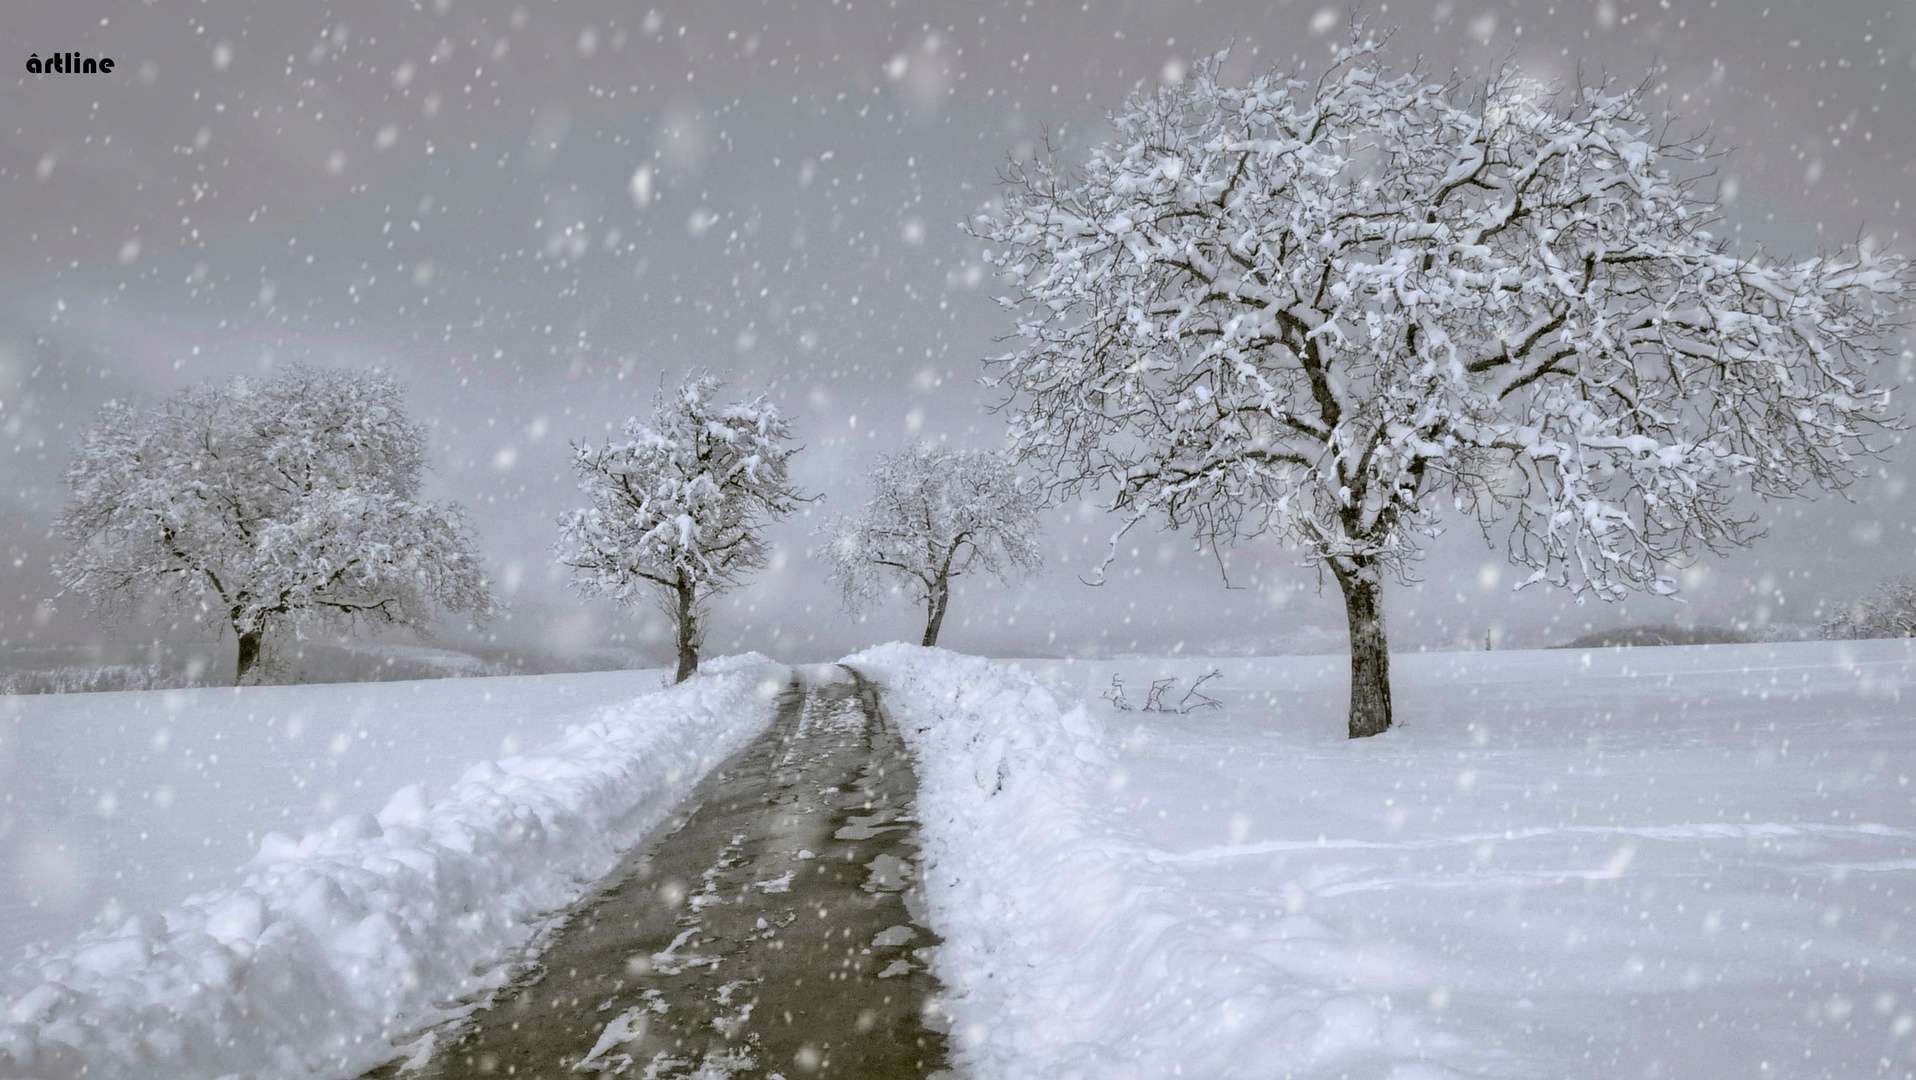 winter walk - "Ain't No Sunshine"